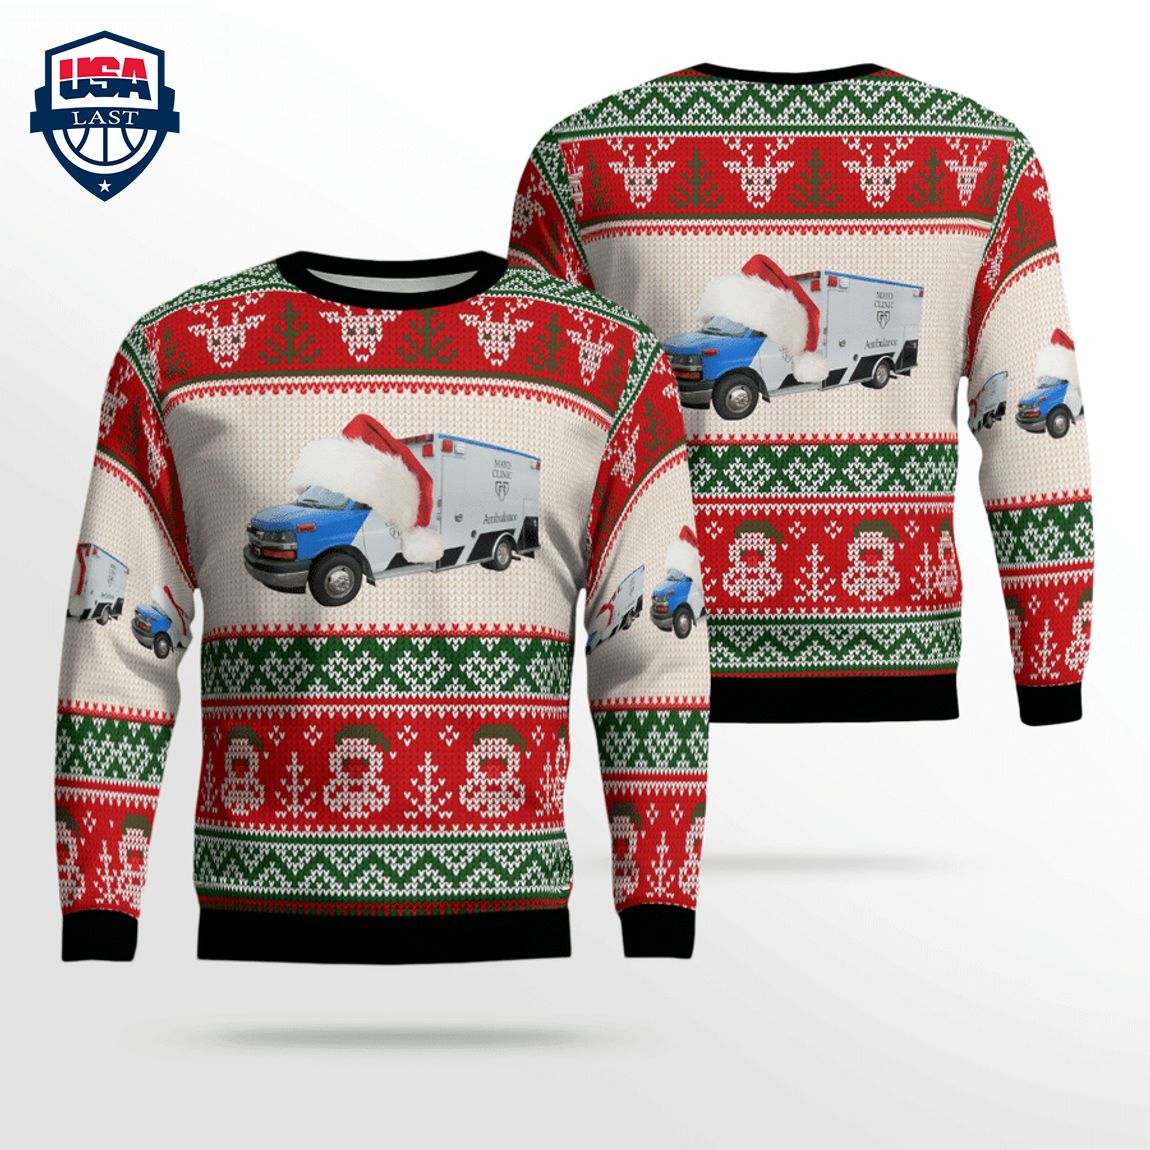 Minnesota Mayo Clinic Ambulance Service Ver 1 3D Christmas Sweater